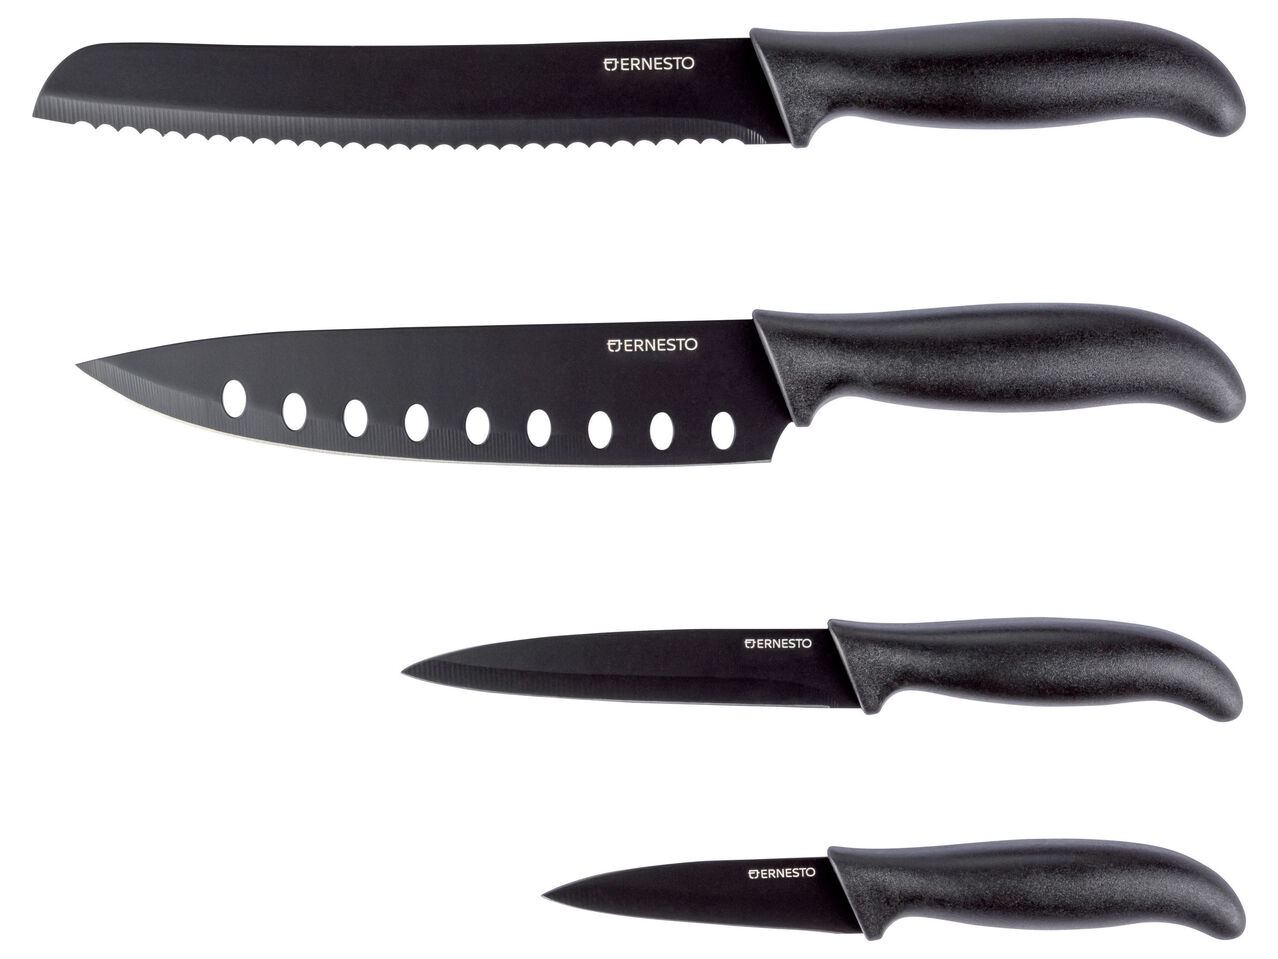 ERNESTO® Zestaw 4 noży , cena 29,99 PLN 
ERNESTO® Zestaw 4 noży 2 zestawy ...